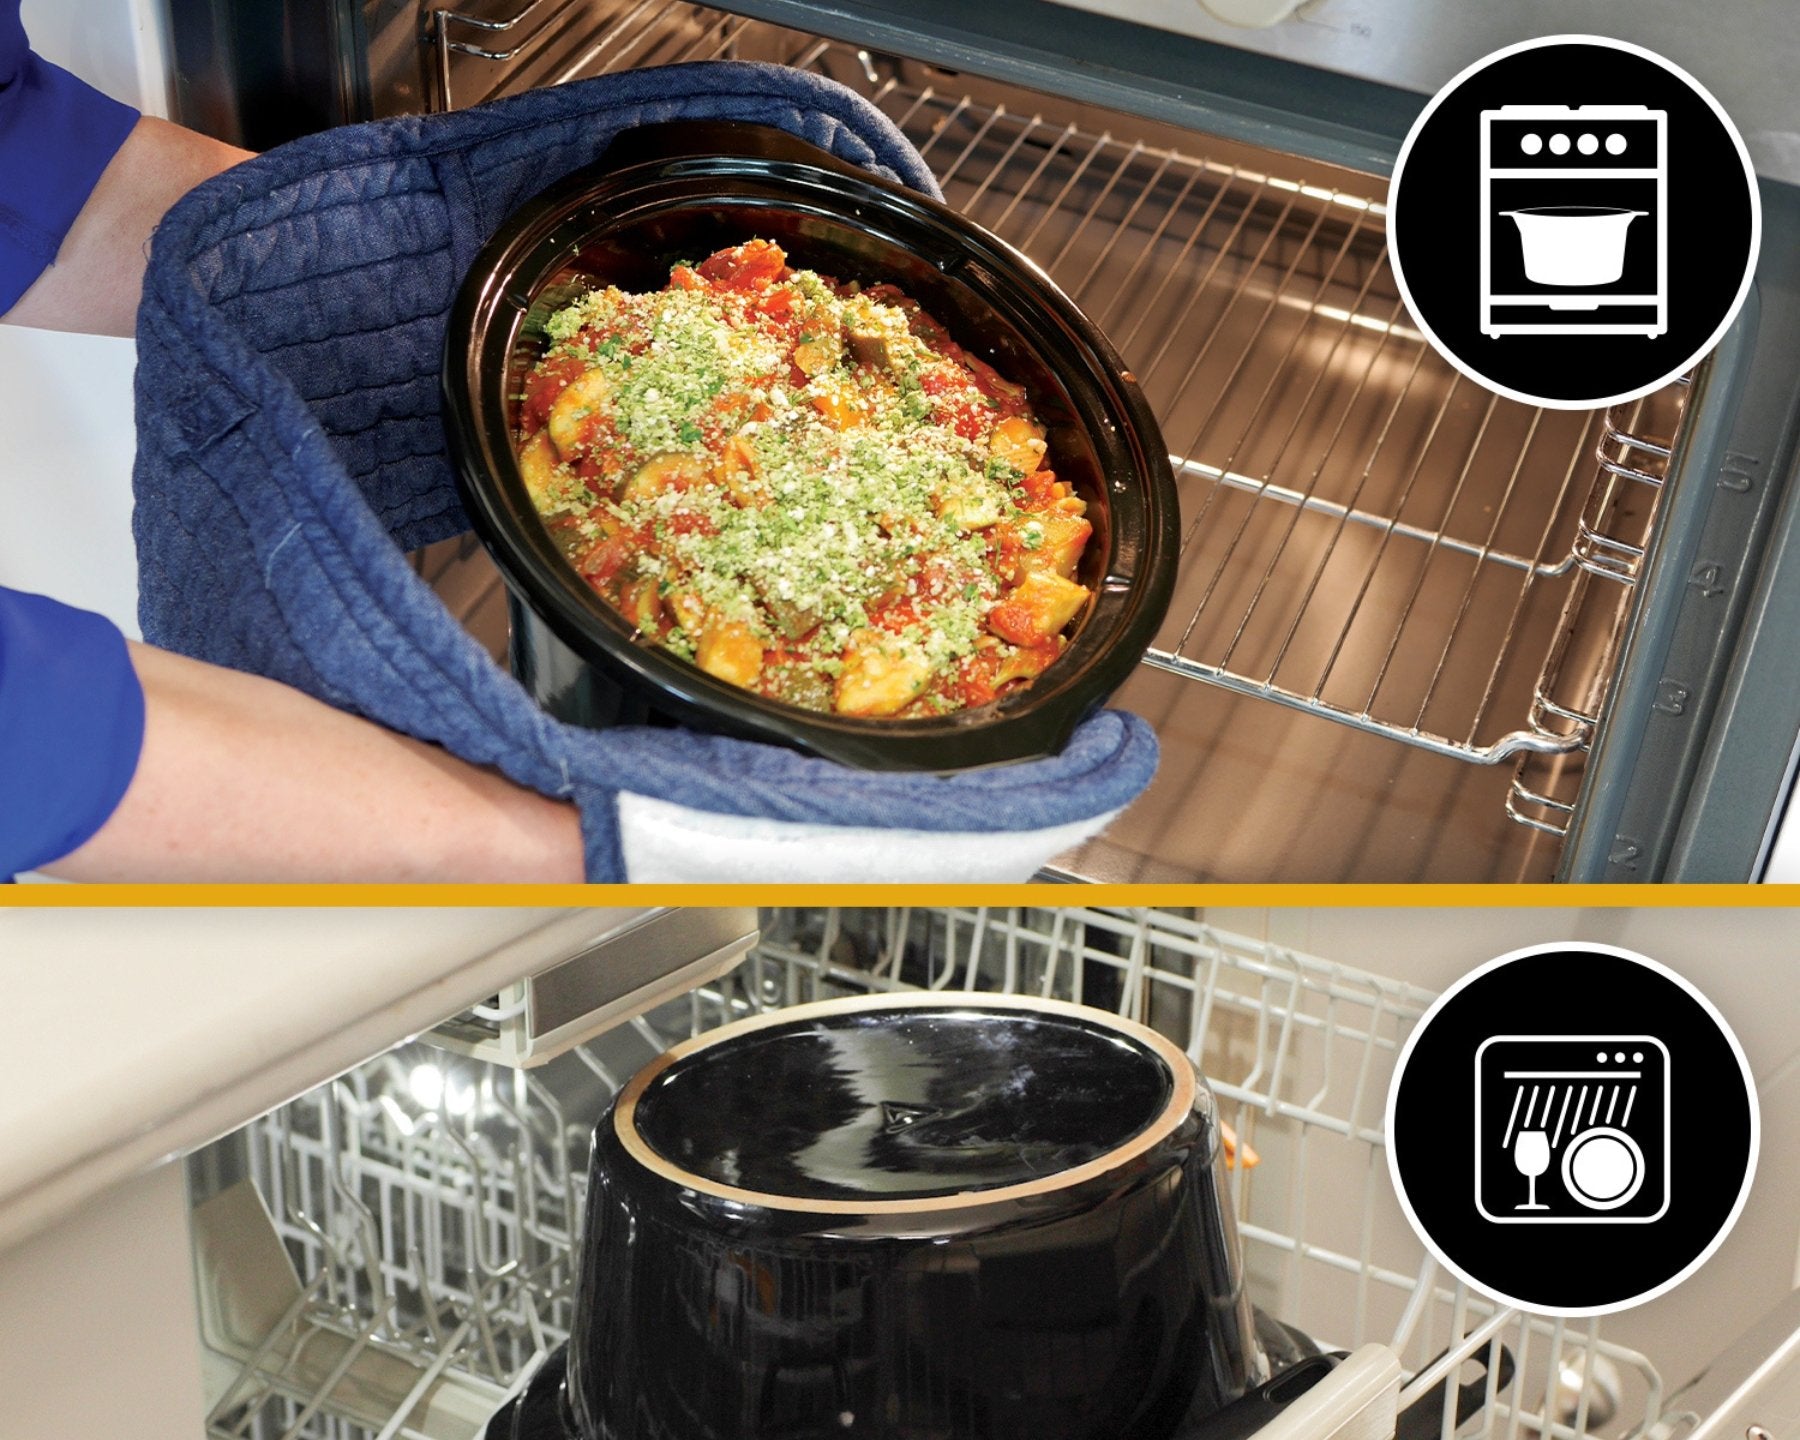 Crockpot ® Digital, 2.4 L, Slow cooker - kitchen-more.ch, kostenloser Versand in der ganzen Schweiz